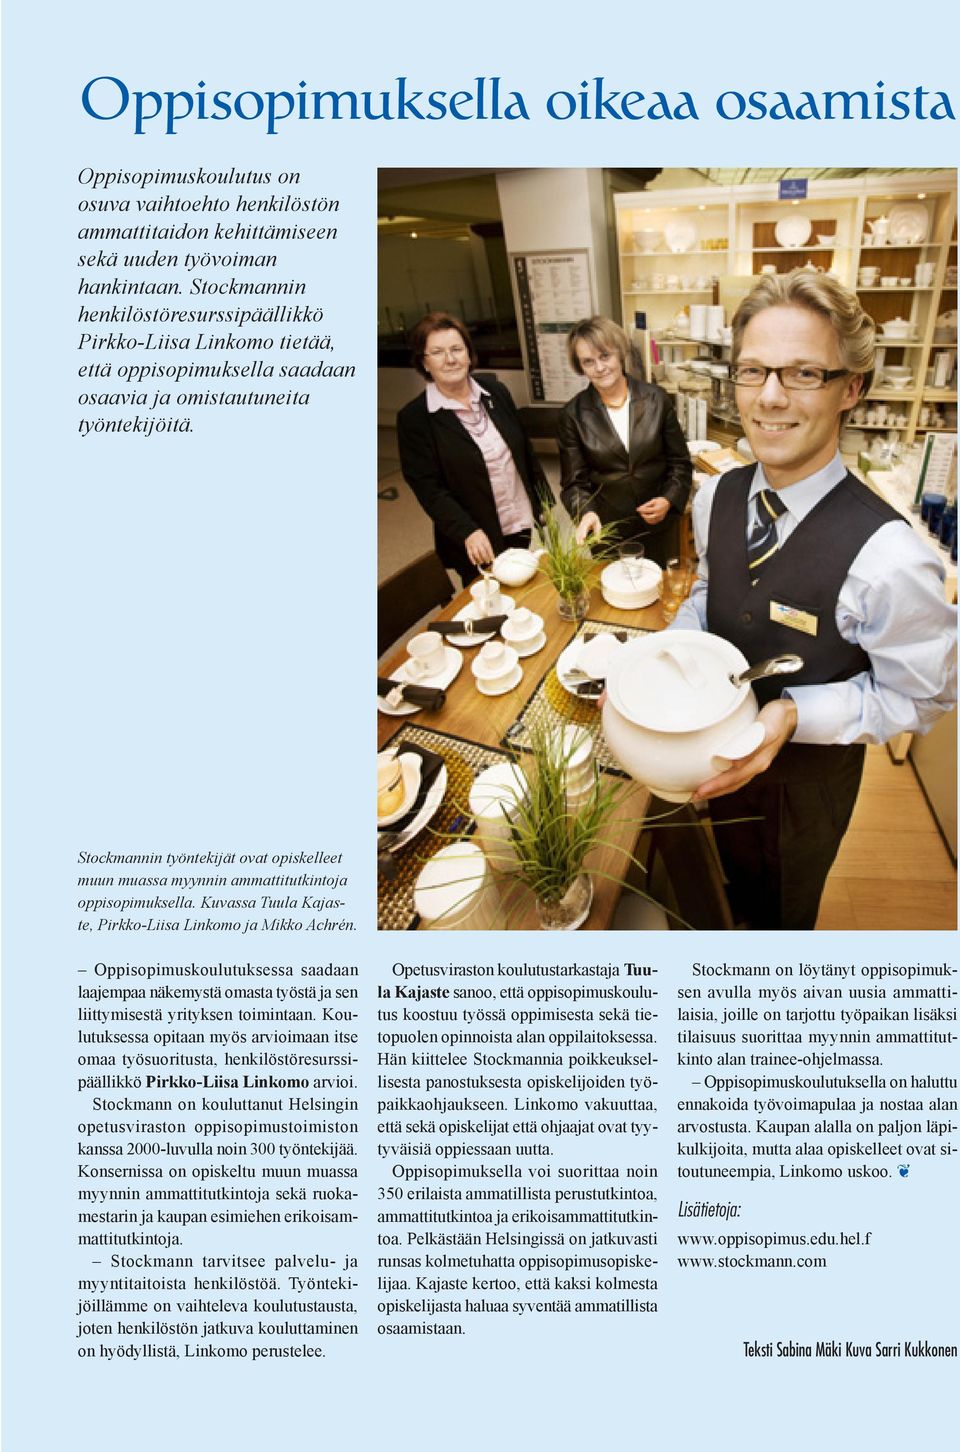 Stockmannin työntekijät ovat opiskelleet muun muassa myynnin ammattitutkintoja oppisopimuksella. Kuvassa Tuula Kajaste, Pirkko-Liisa Linkomo ja Mikko Achrén.